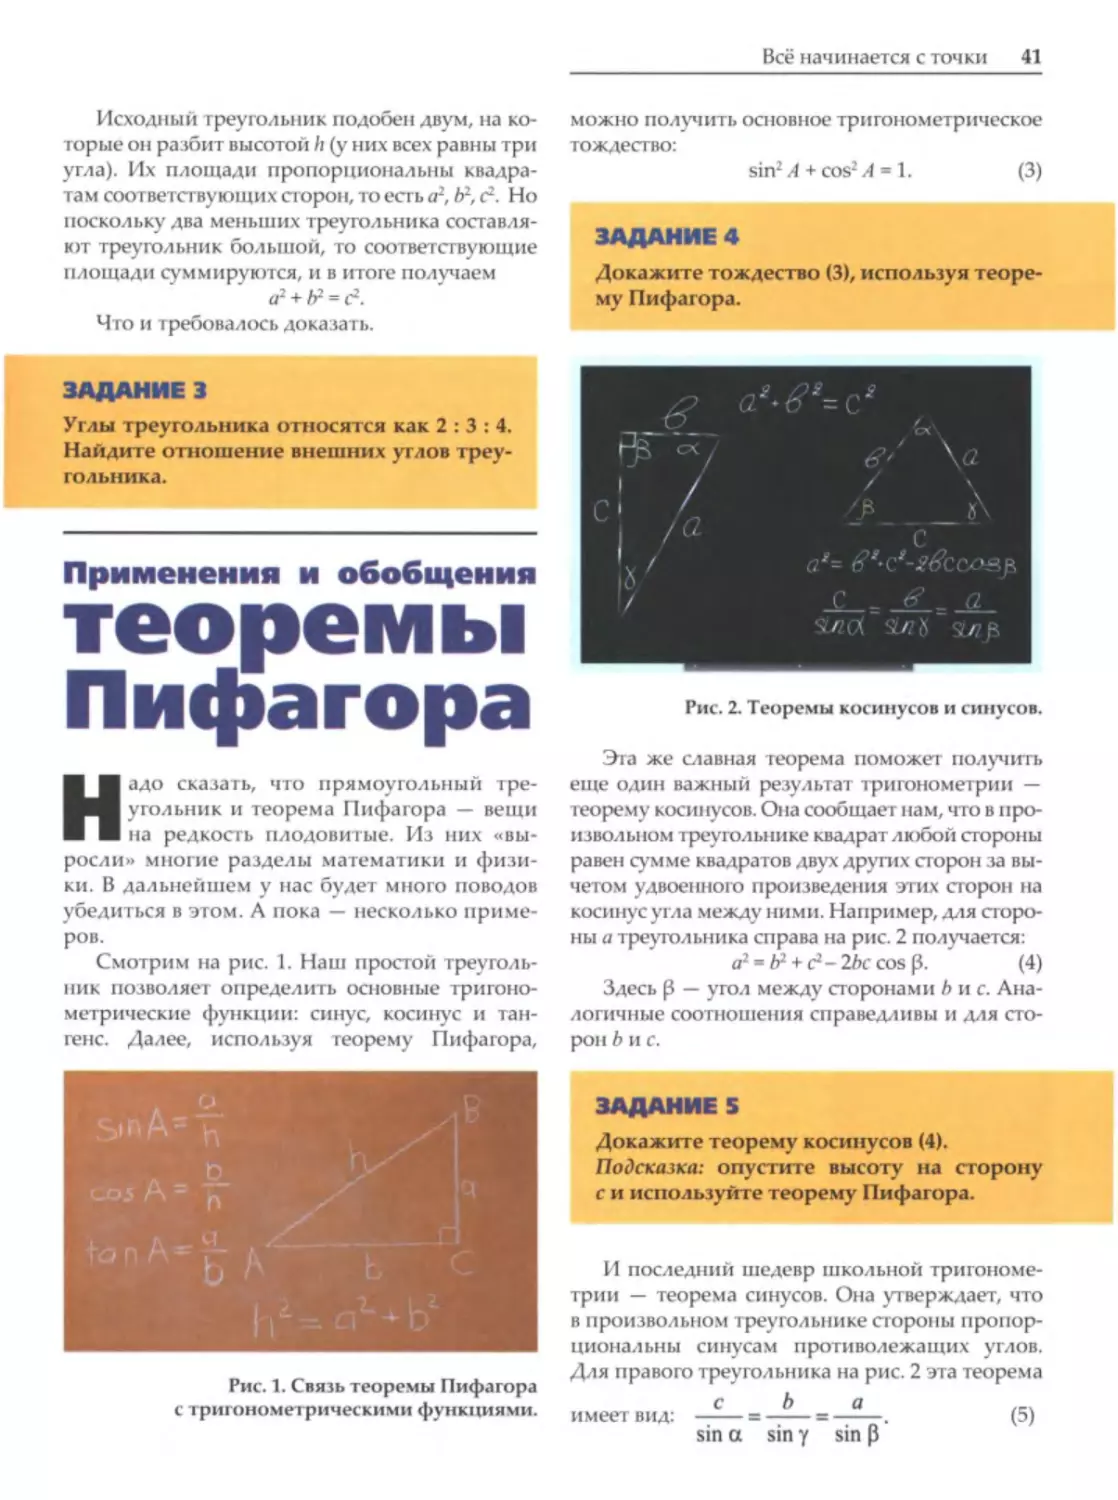 Применения и обобщения теоремы Пифагора